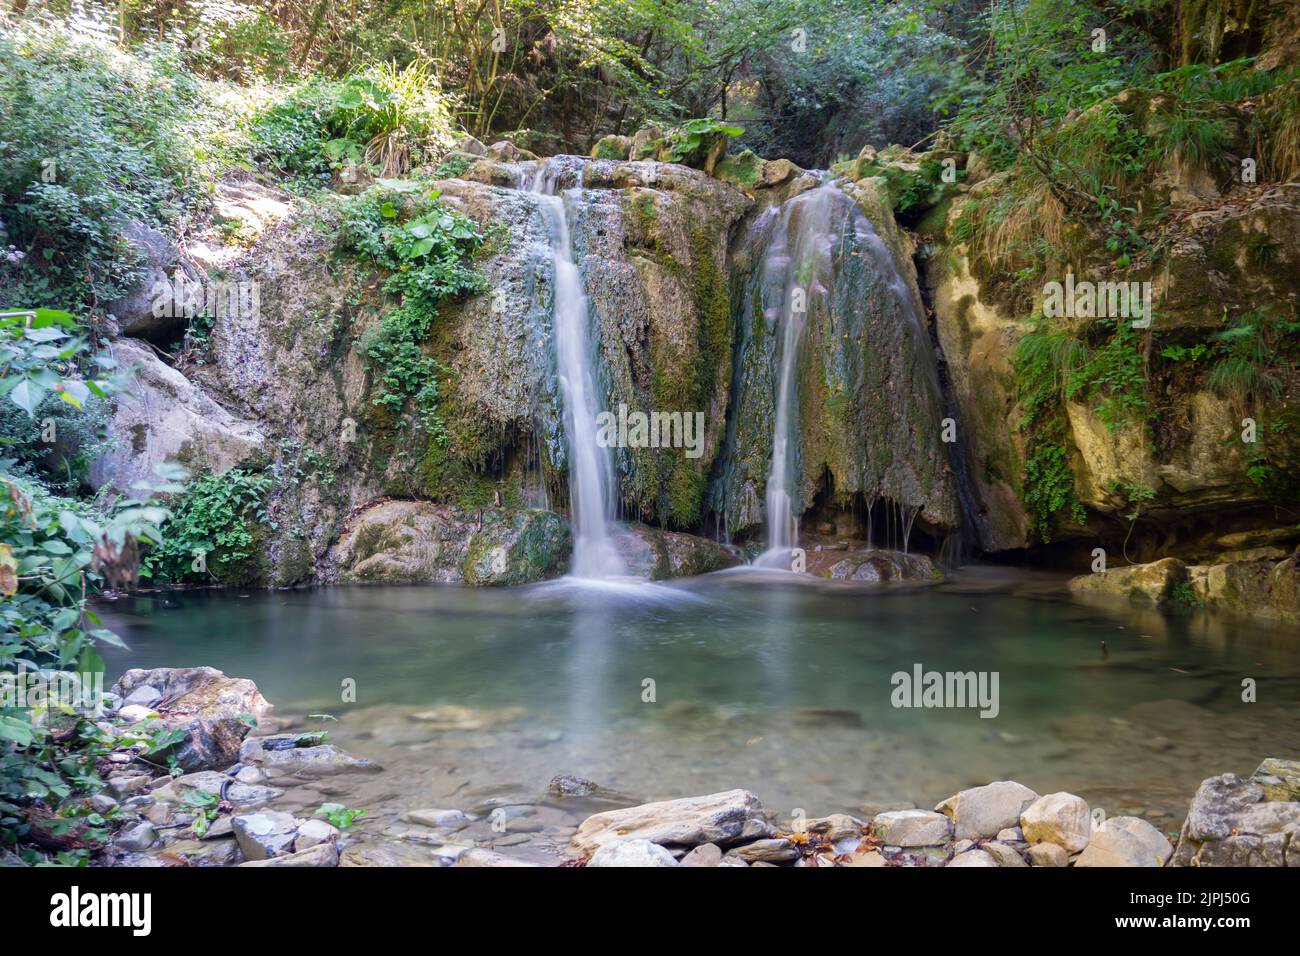 Bozzi di Magliano (oder del Pontacio). Natürliche Wasserfälle, die durch den Bach gebildet werden. Befinden sich in der grünen Lunigiana. Toskana Stockfoto